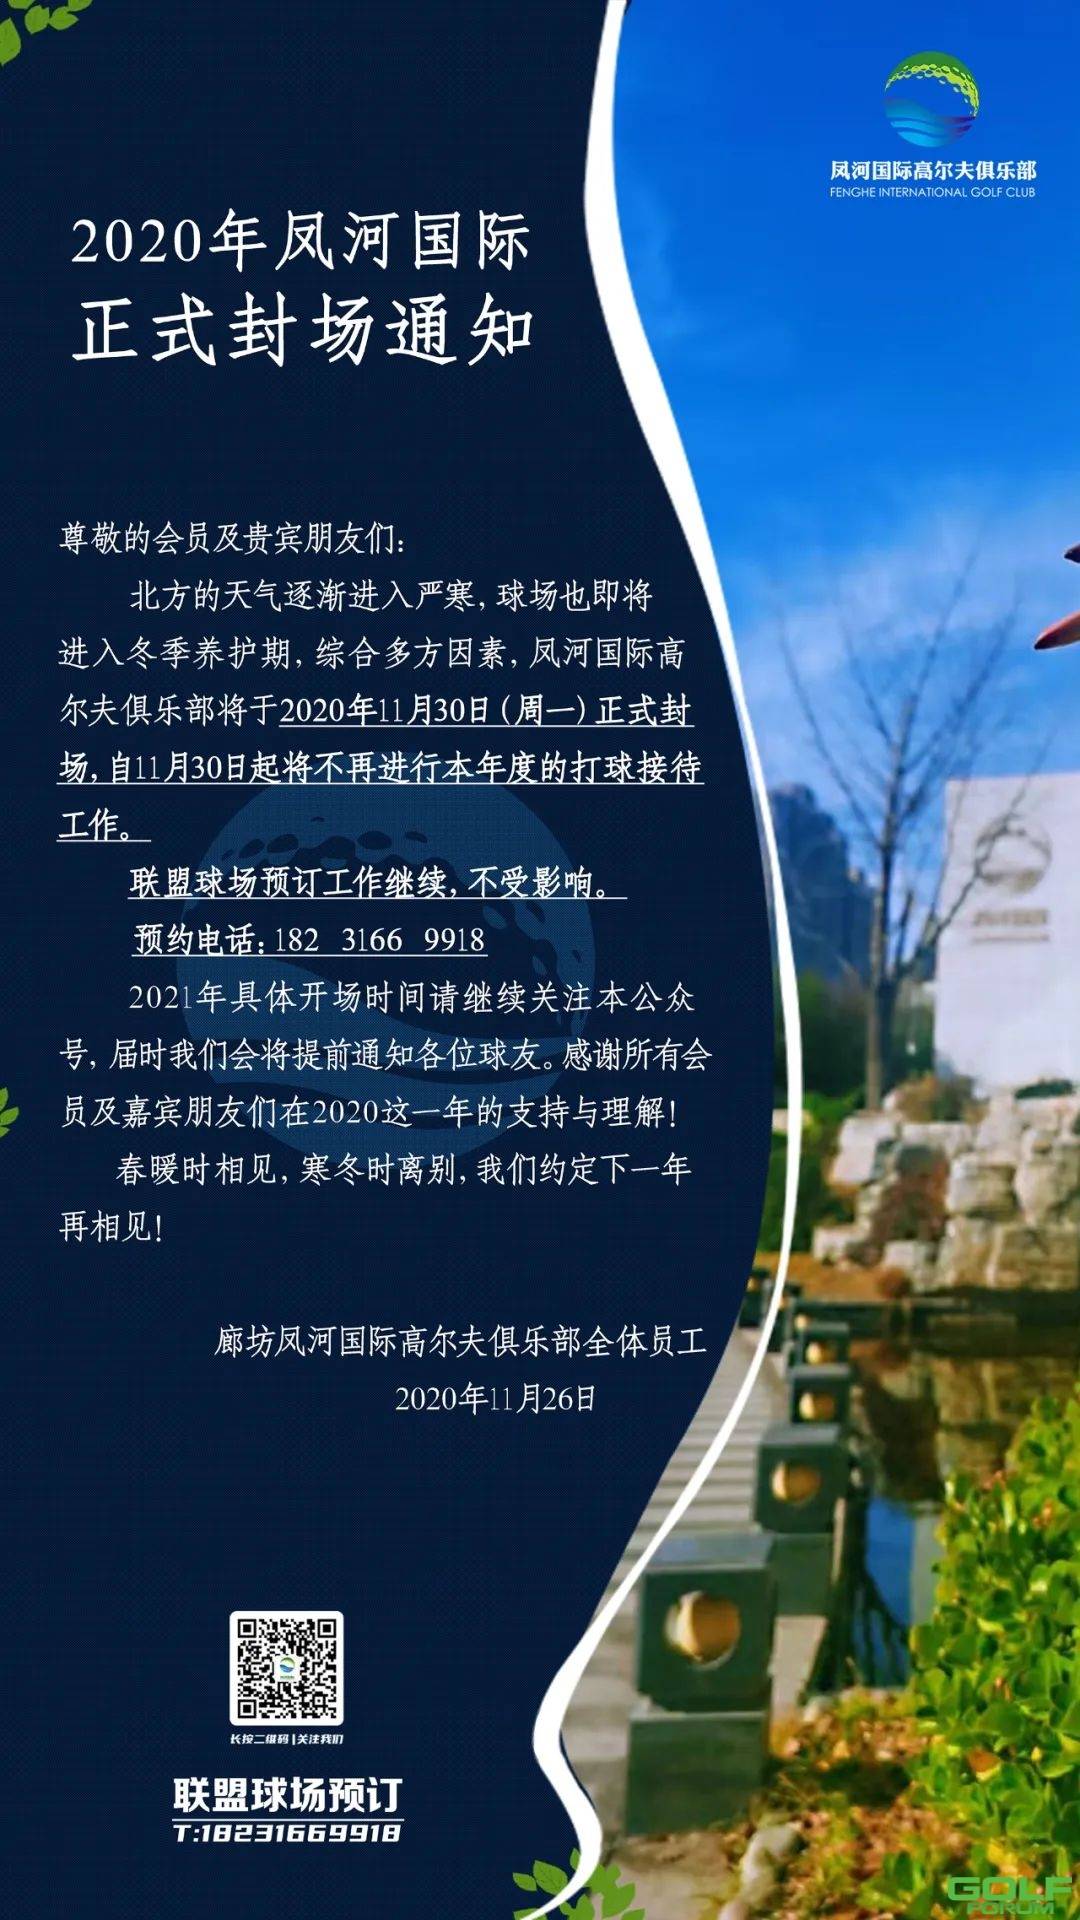 凤河国际高尔夫俱乐部丨2020年封场通知